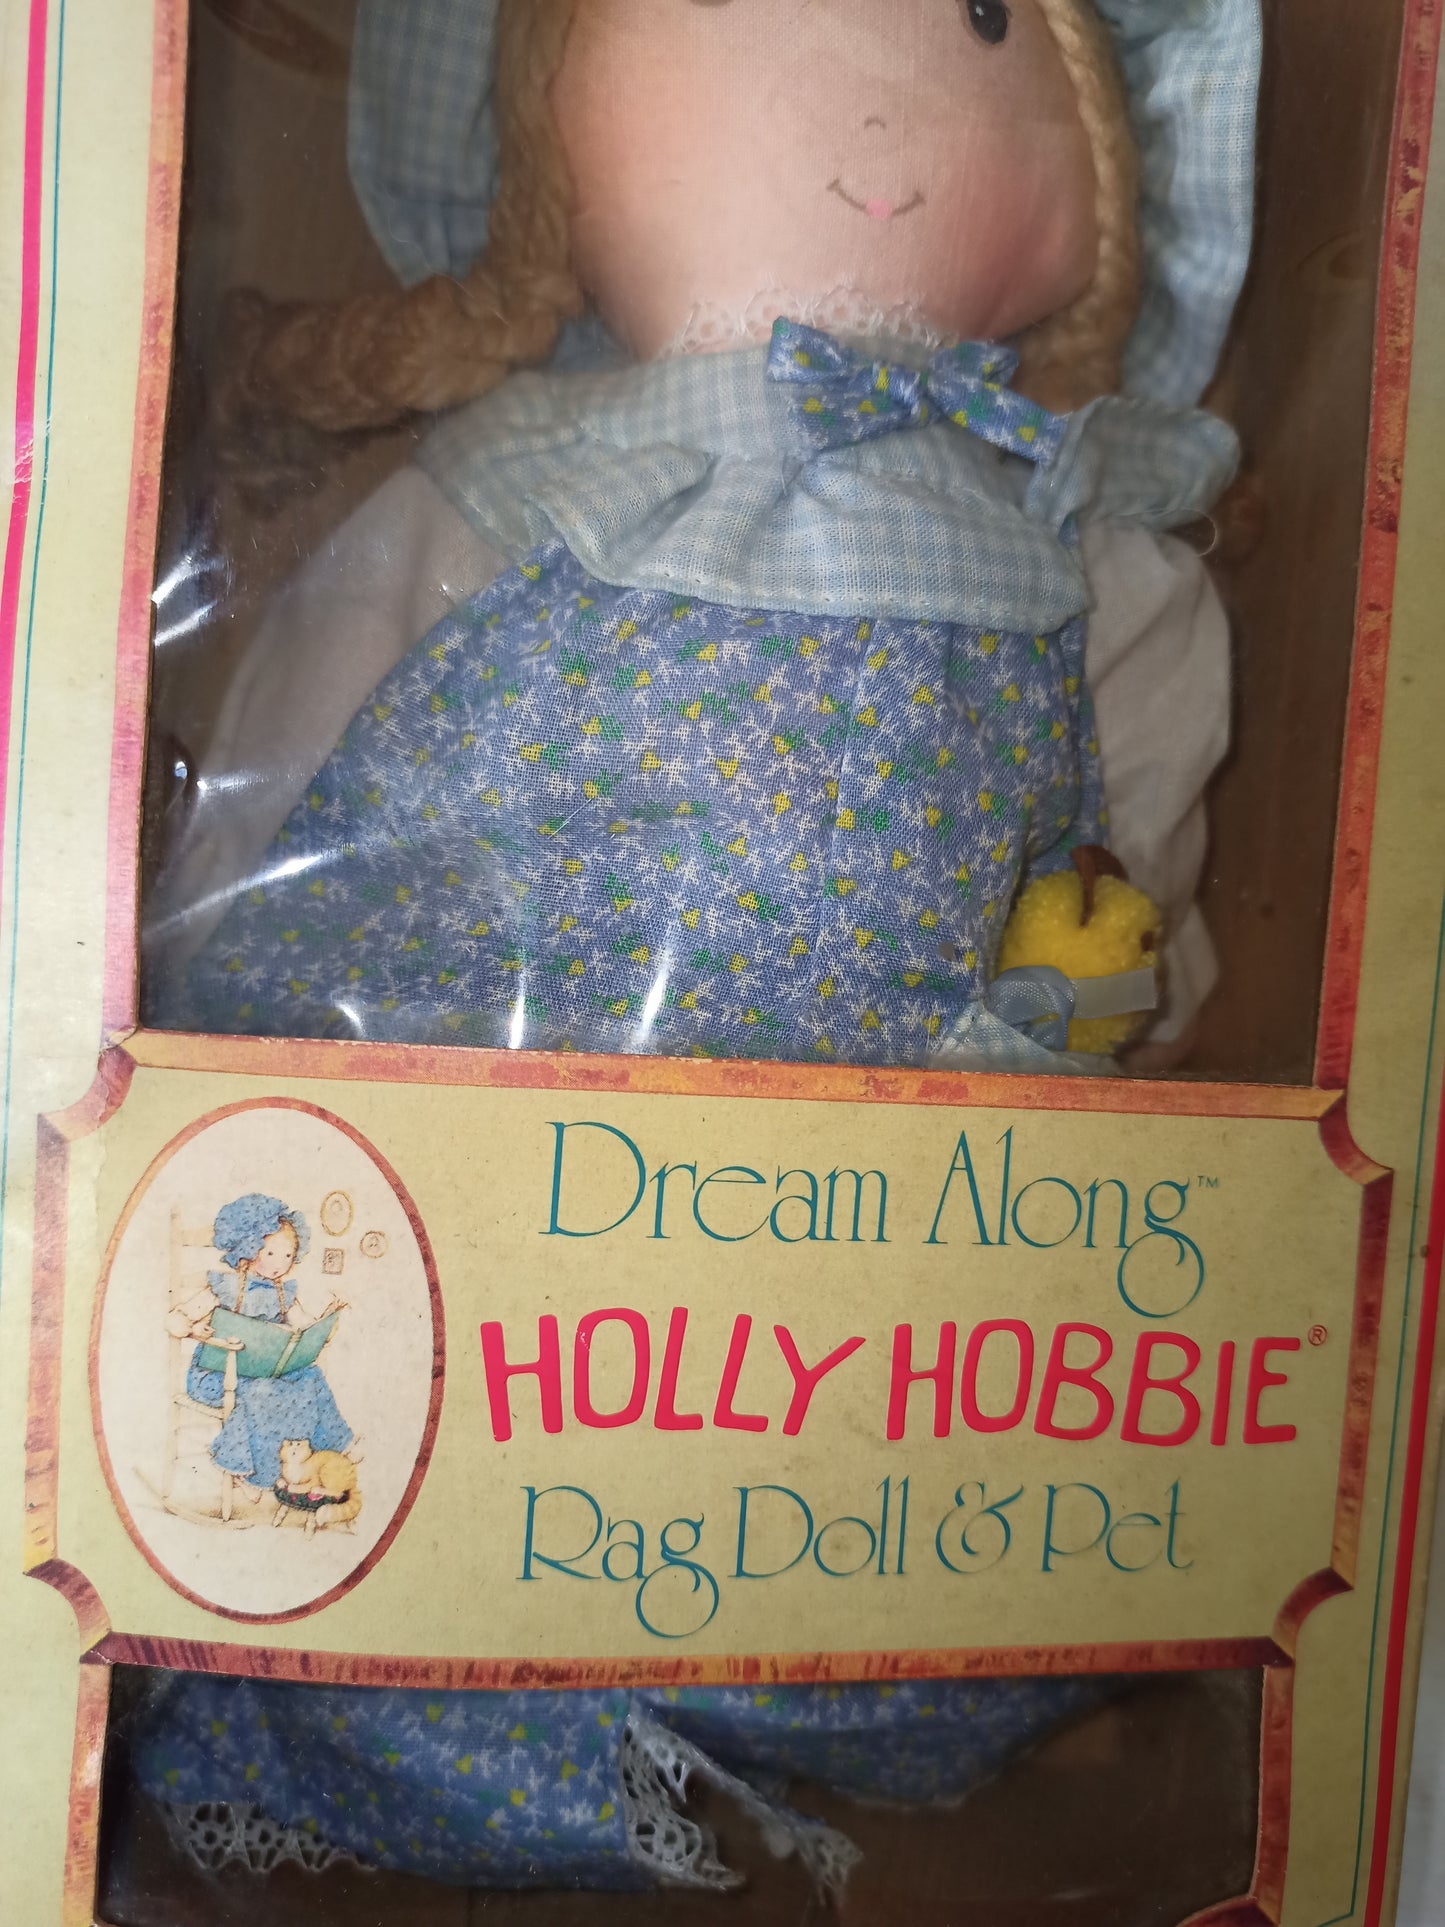 Bambola Holly Hobbie Dream a long, Knickerbocker originale anni 70